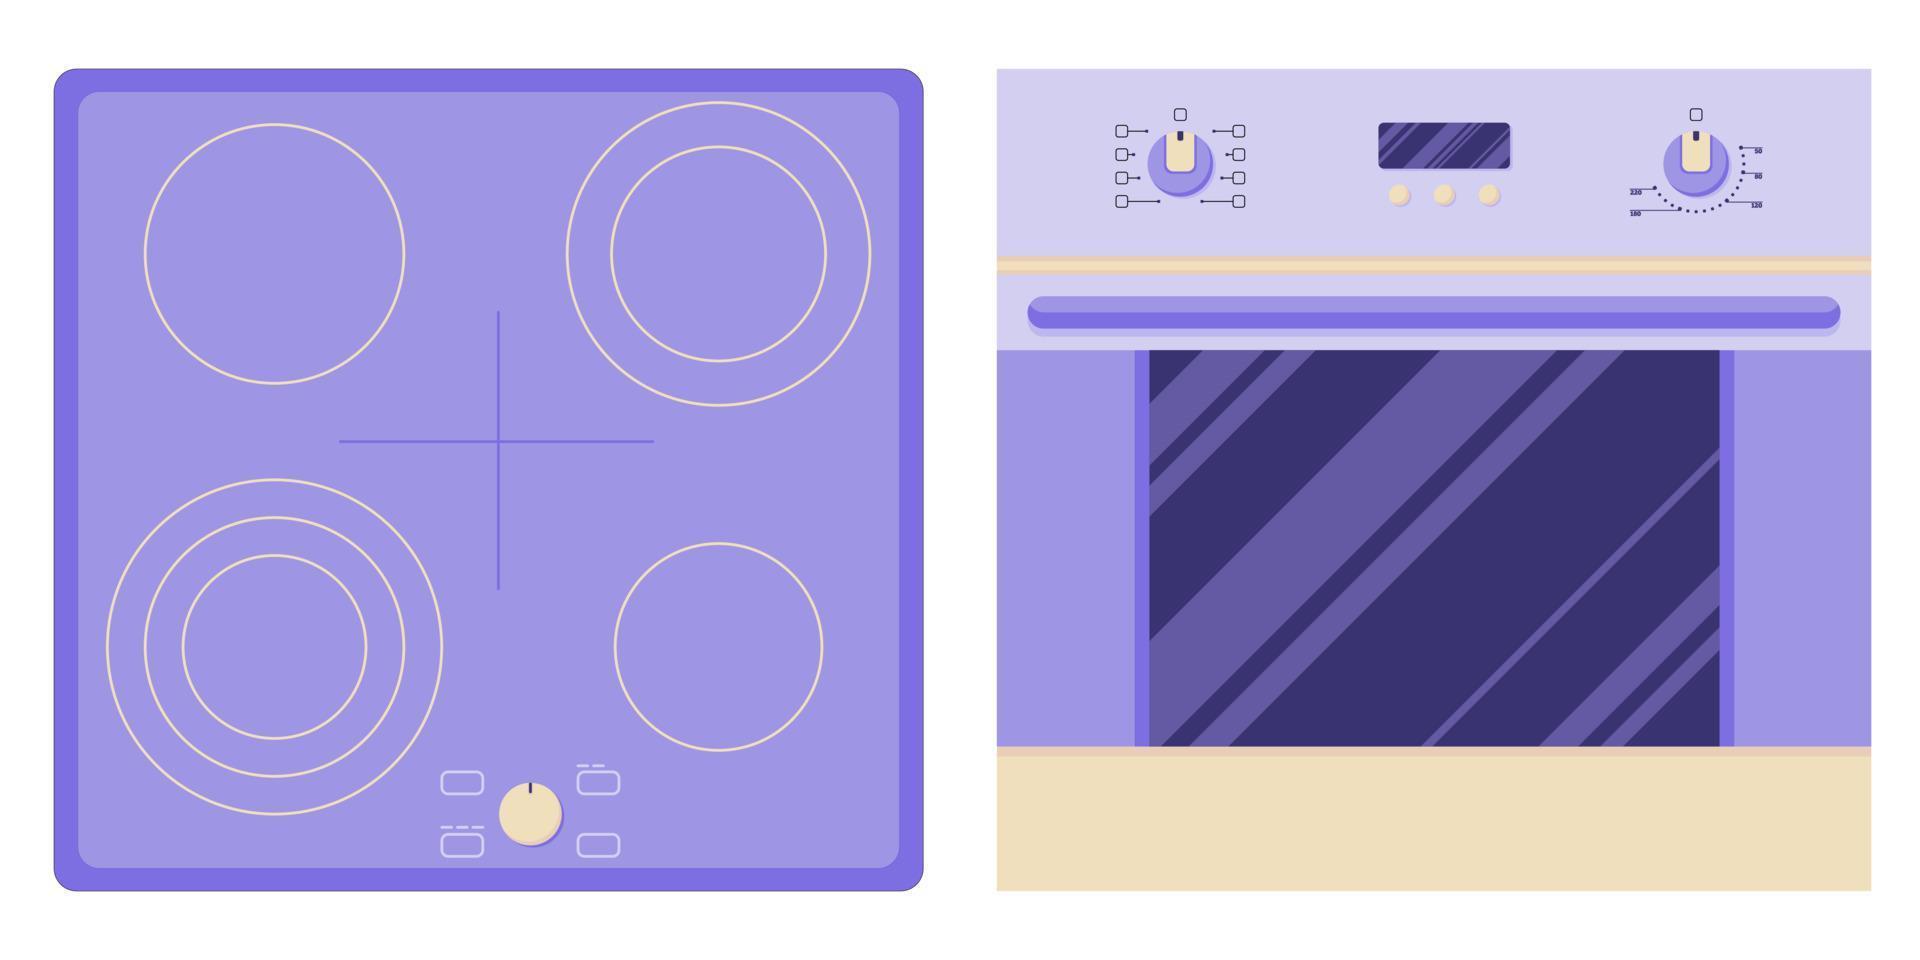 Placa de inducción y horno para cocinar y hornear alimentos, diferentes niveles de calentamiento y cocción en un estilo plano aislado en un fondo blanco. vector